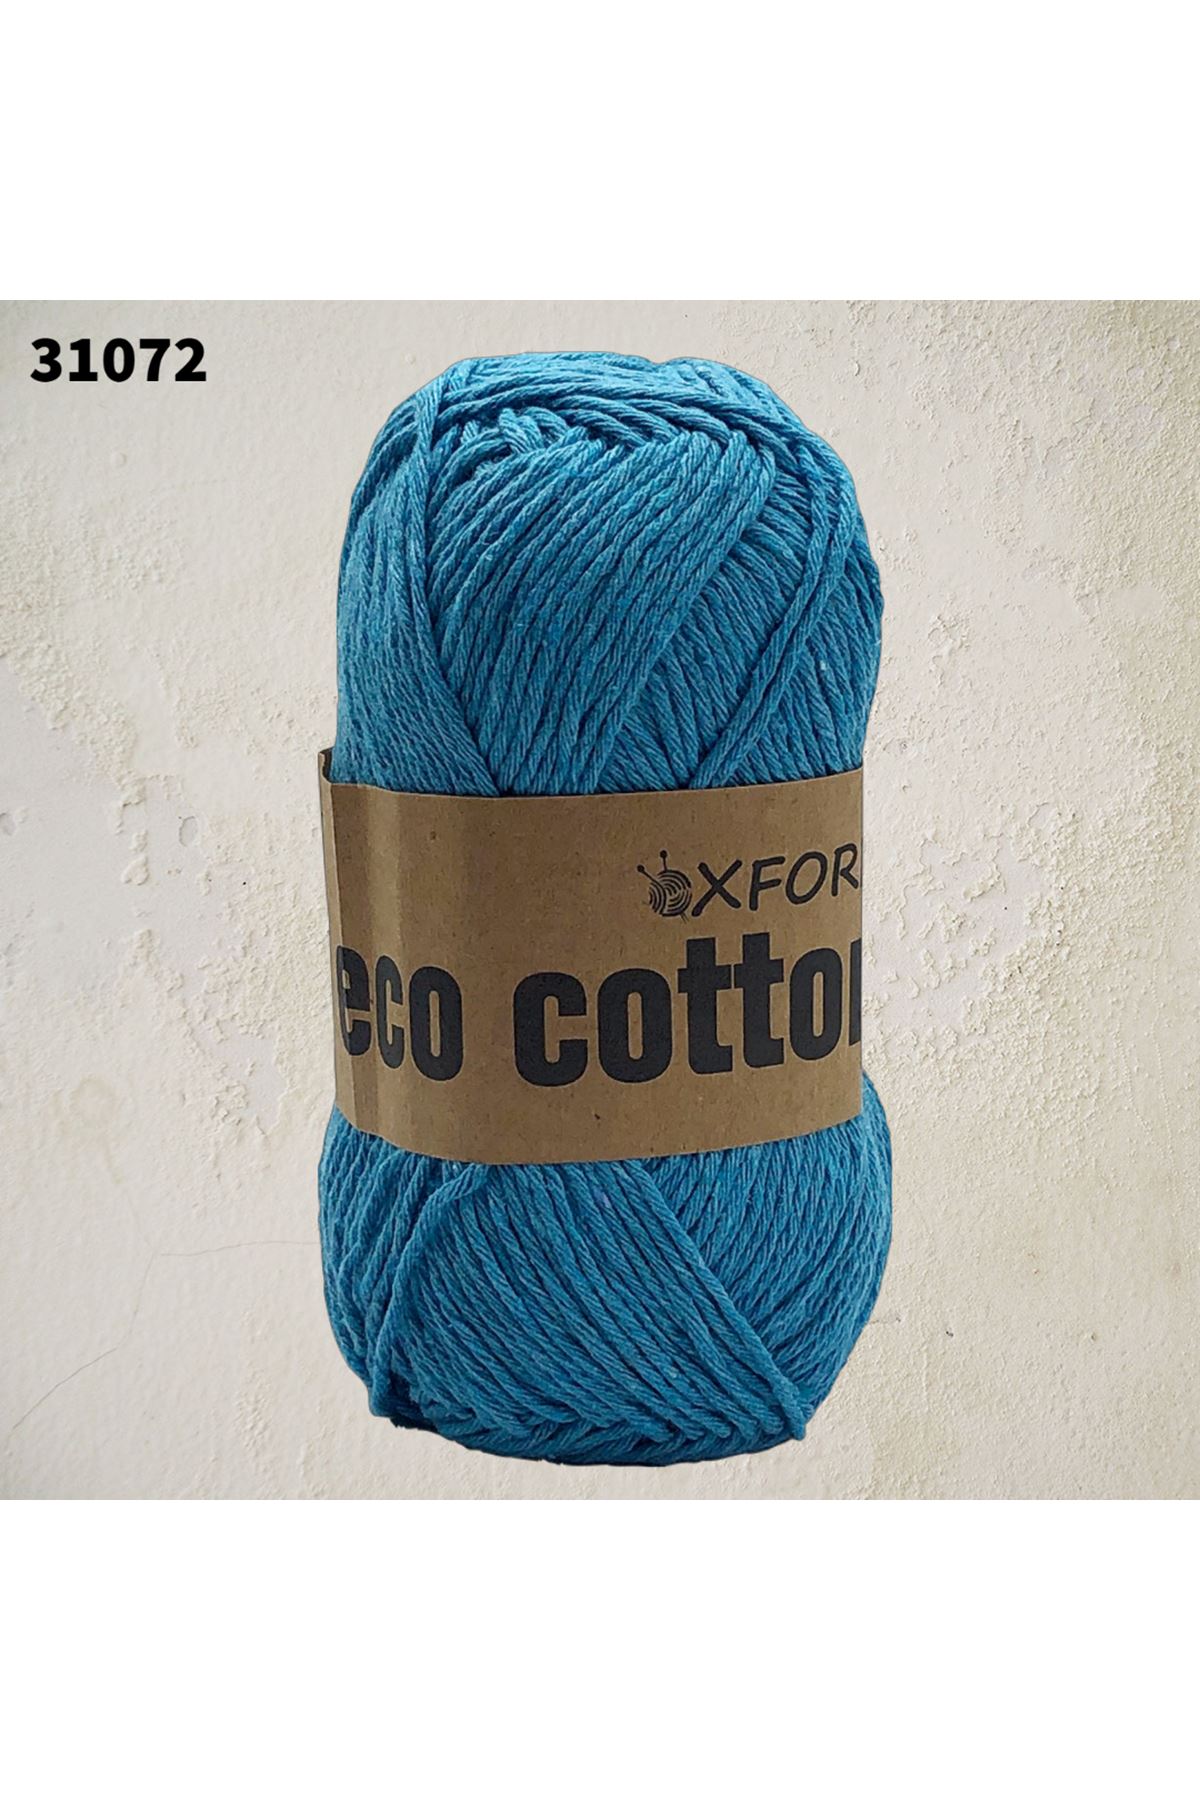 Eco Cotton 100 gram - 31072 - Turkuaz